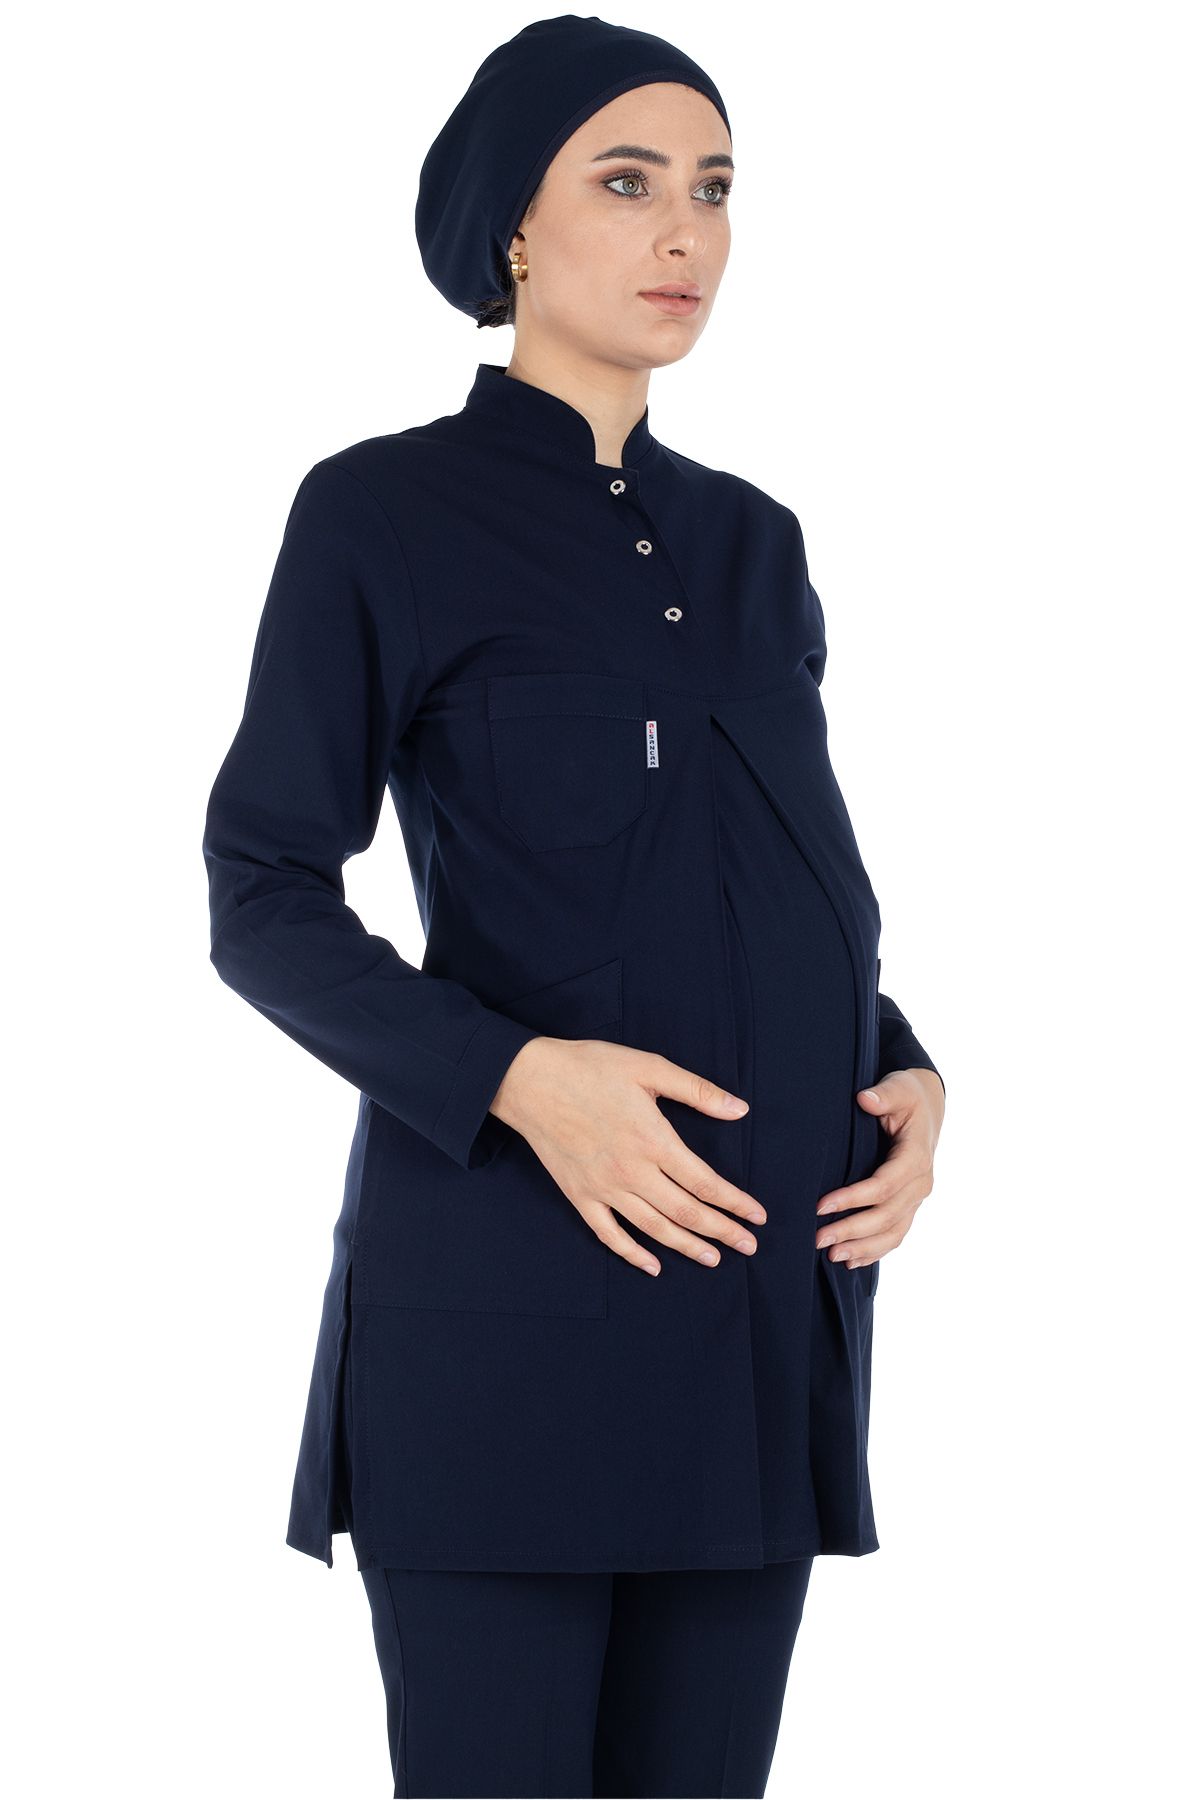 Alsancak Üniforma Lacivert Likralı İnce Kumaş Hamile Tesettür Hemşire Doktor Forması Takımı